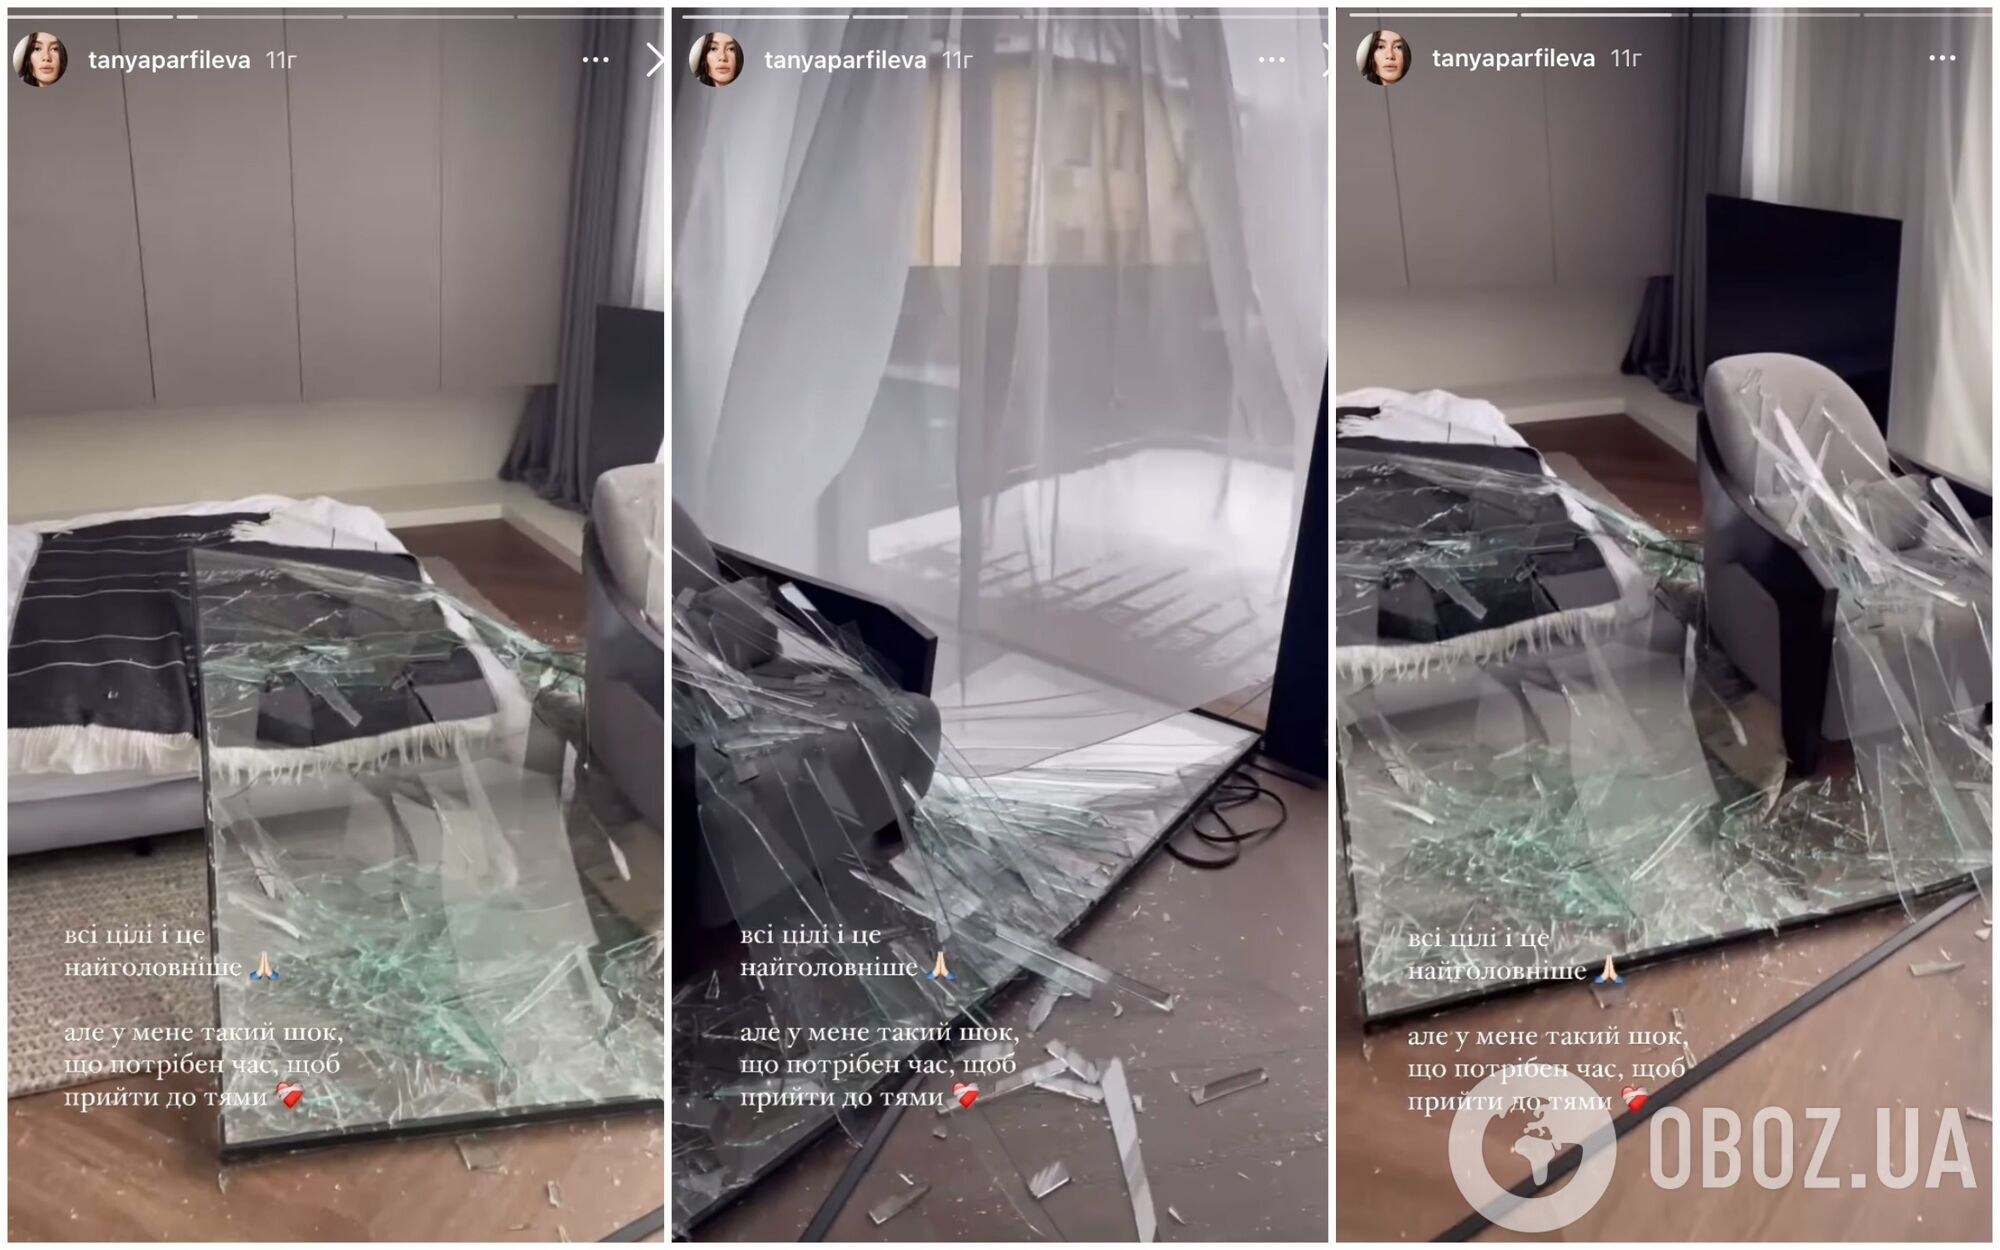 Российская ракета повредила роскошный дом блогерши-миллионницы Татьяны Парфильевой под Киевом. Фото